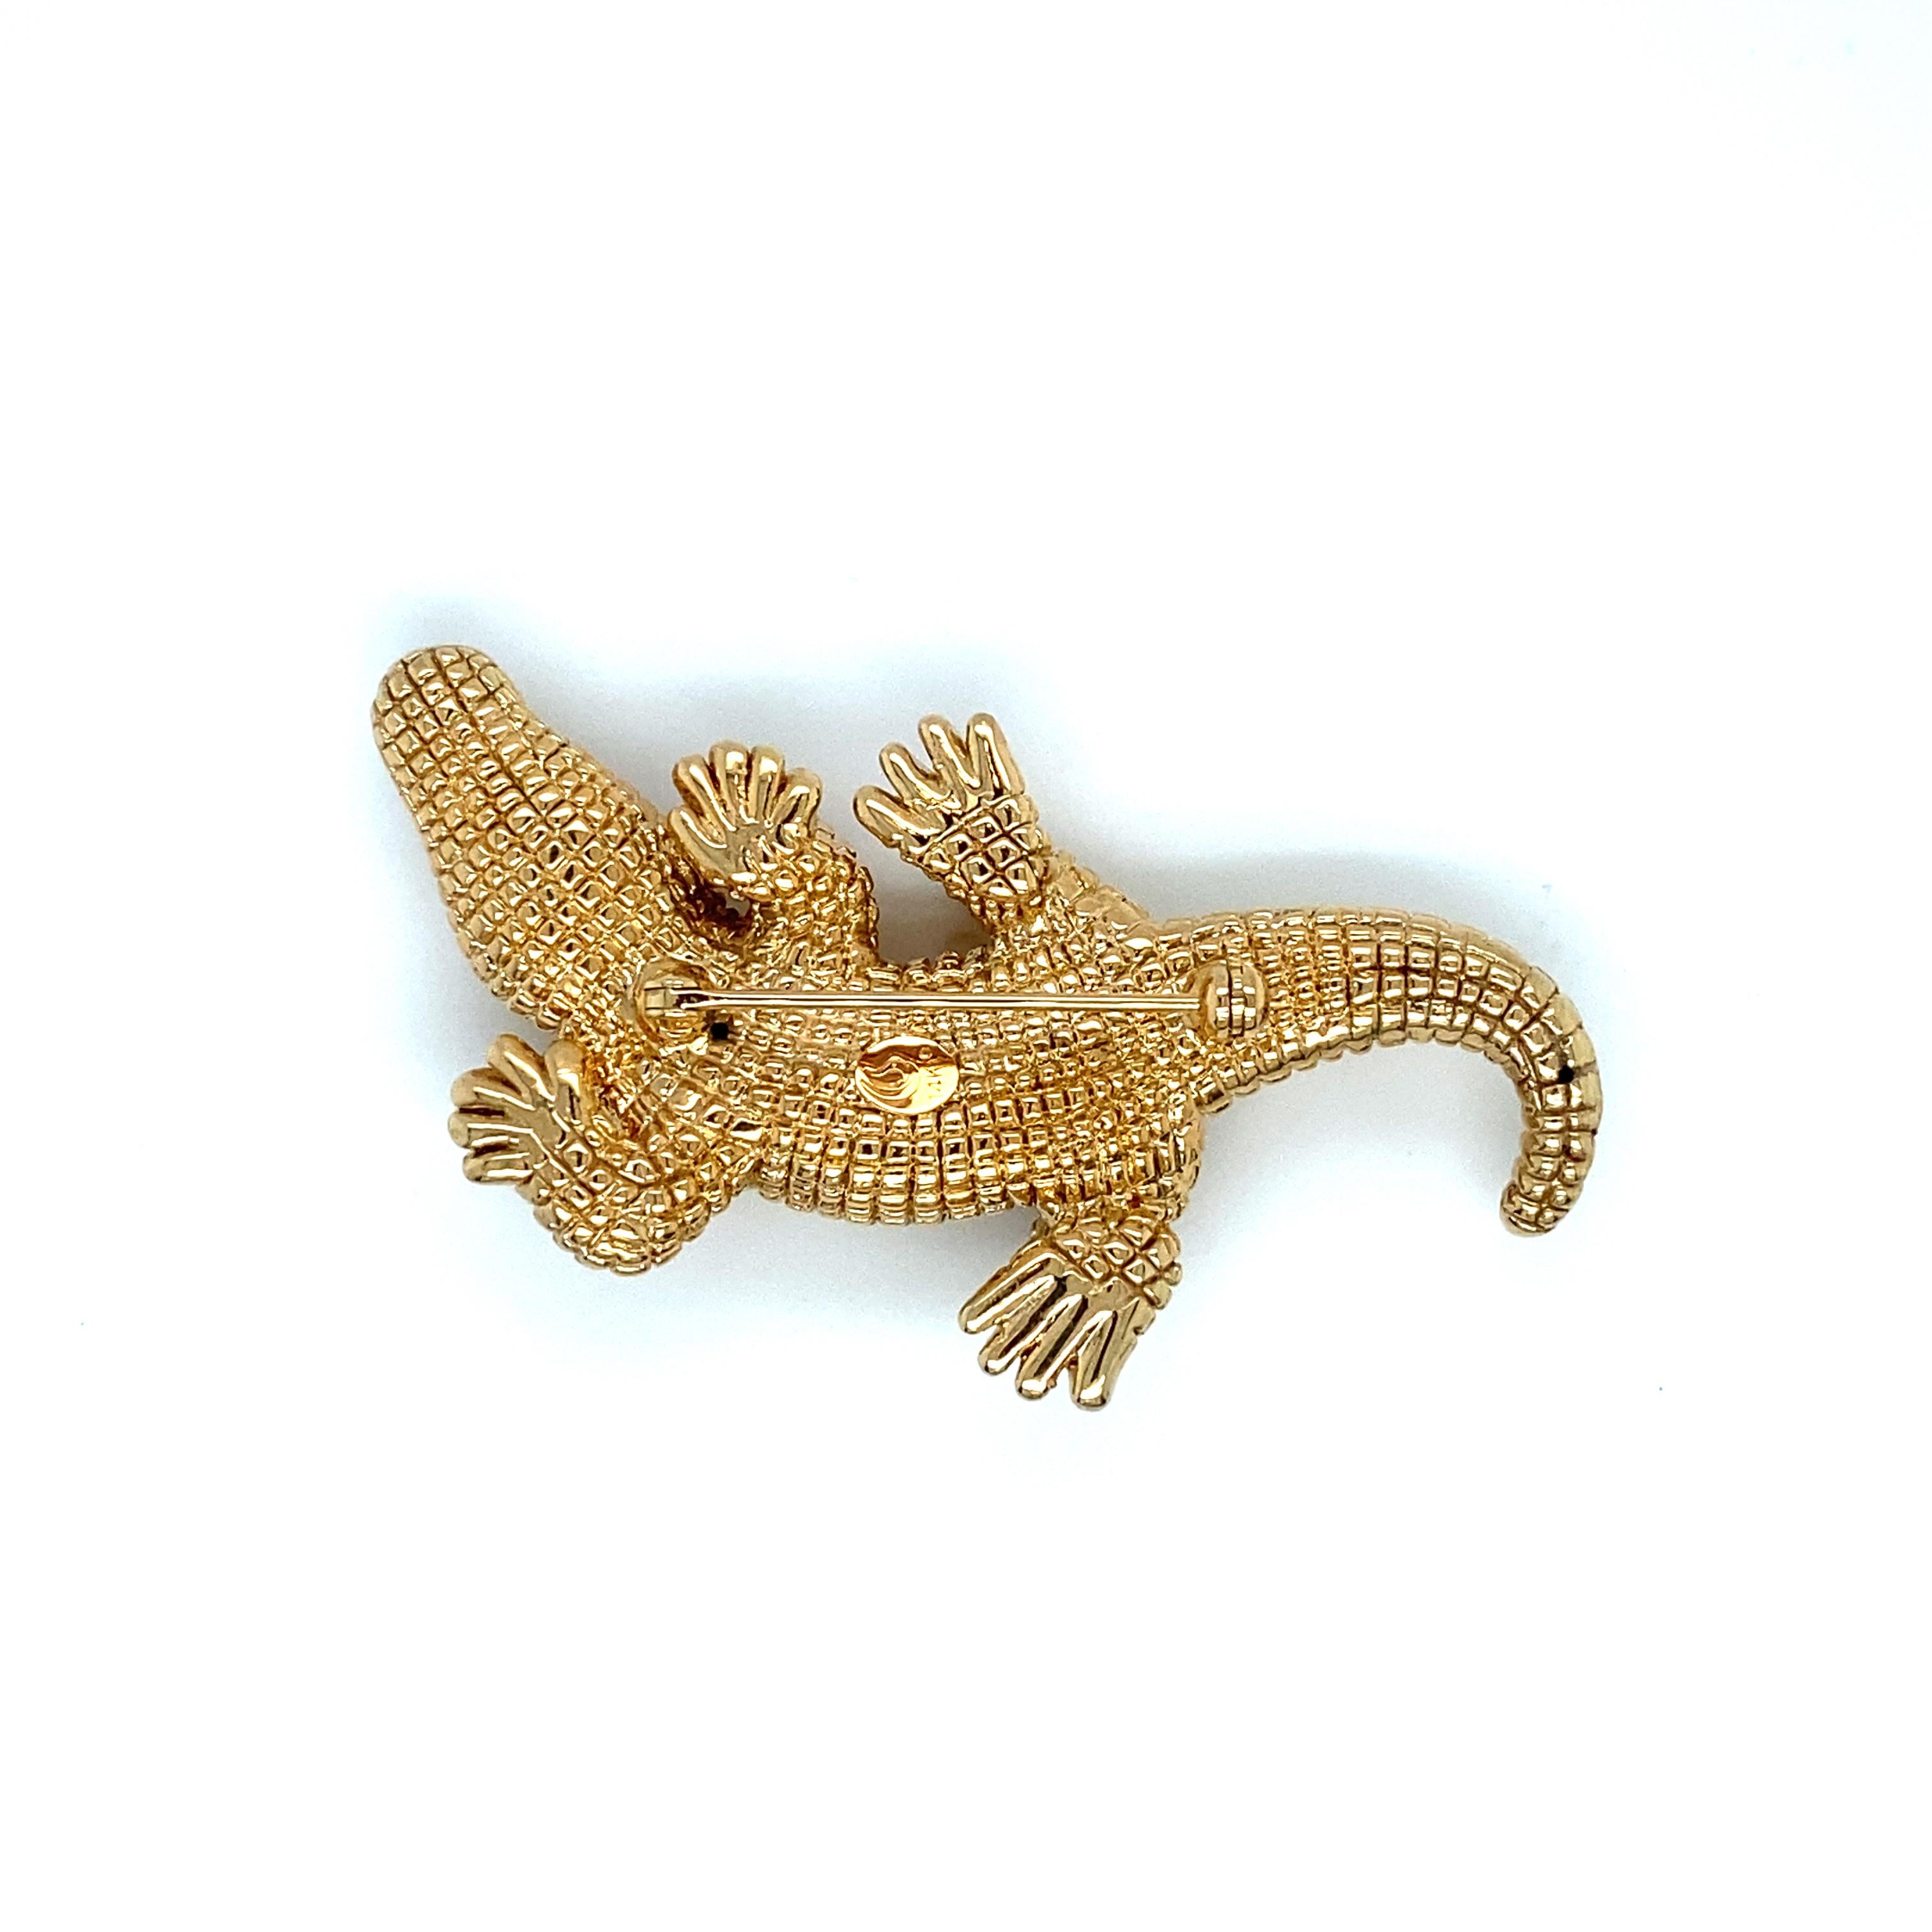 Details zum Artikel: Diese einzigartige Alligator-Brosche zeichnet sich durch exquisite Details in Handwerk und Konstruktion aus. Die Schuppen des Alligators sind wunderschön aus 14-karätigem Gelbgold geformt. Diese Brosche ist ein wunderbares